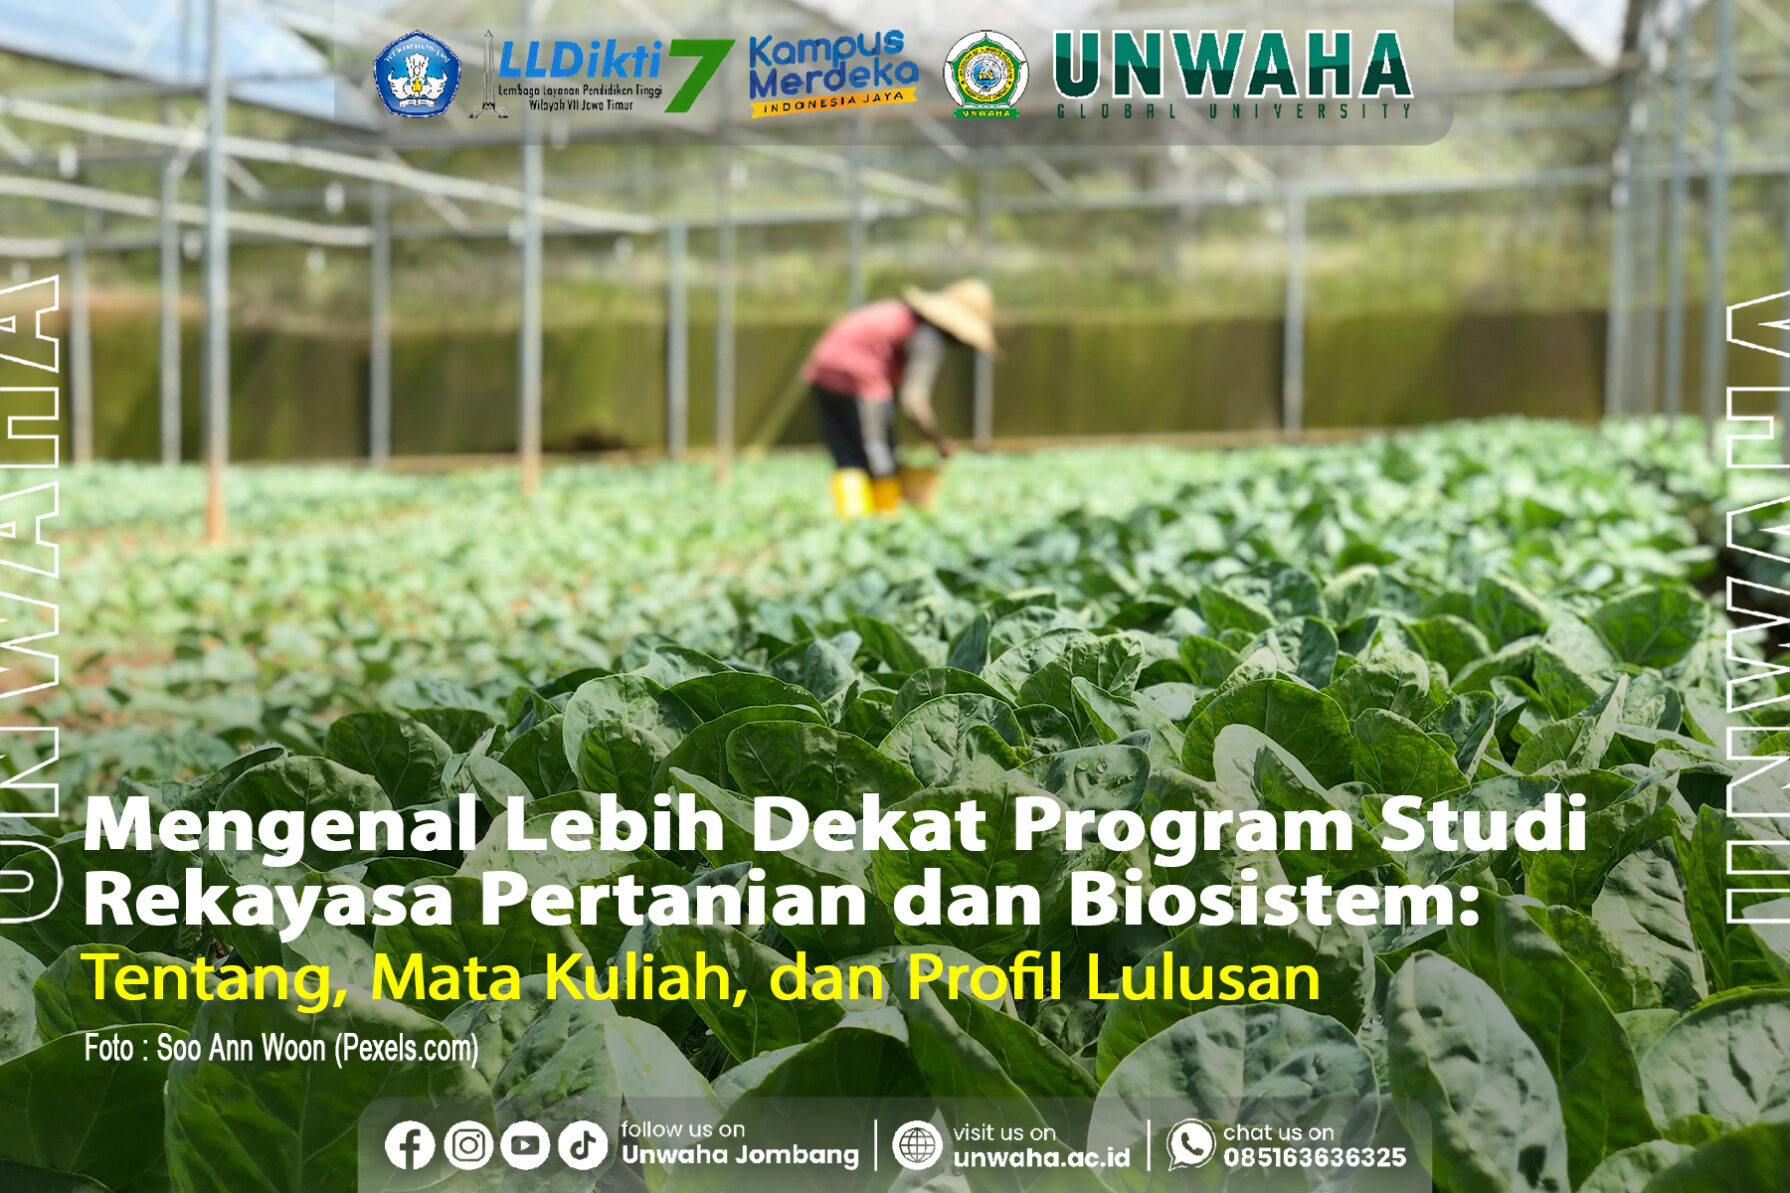 Mengenal Lebih Dekat dengan Program Studi Rekayasa Pertanian dan Biosistem Unwaha Jombang